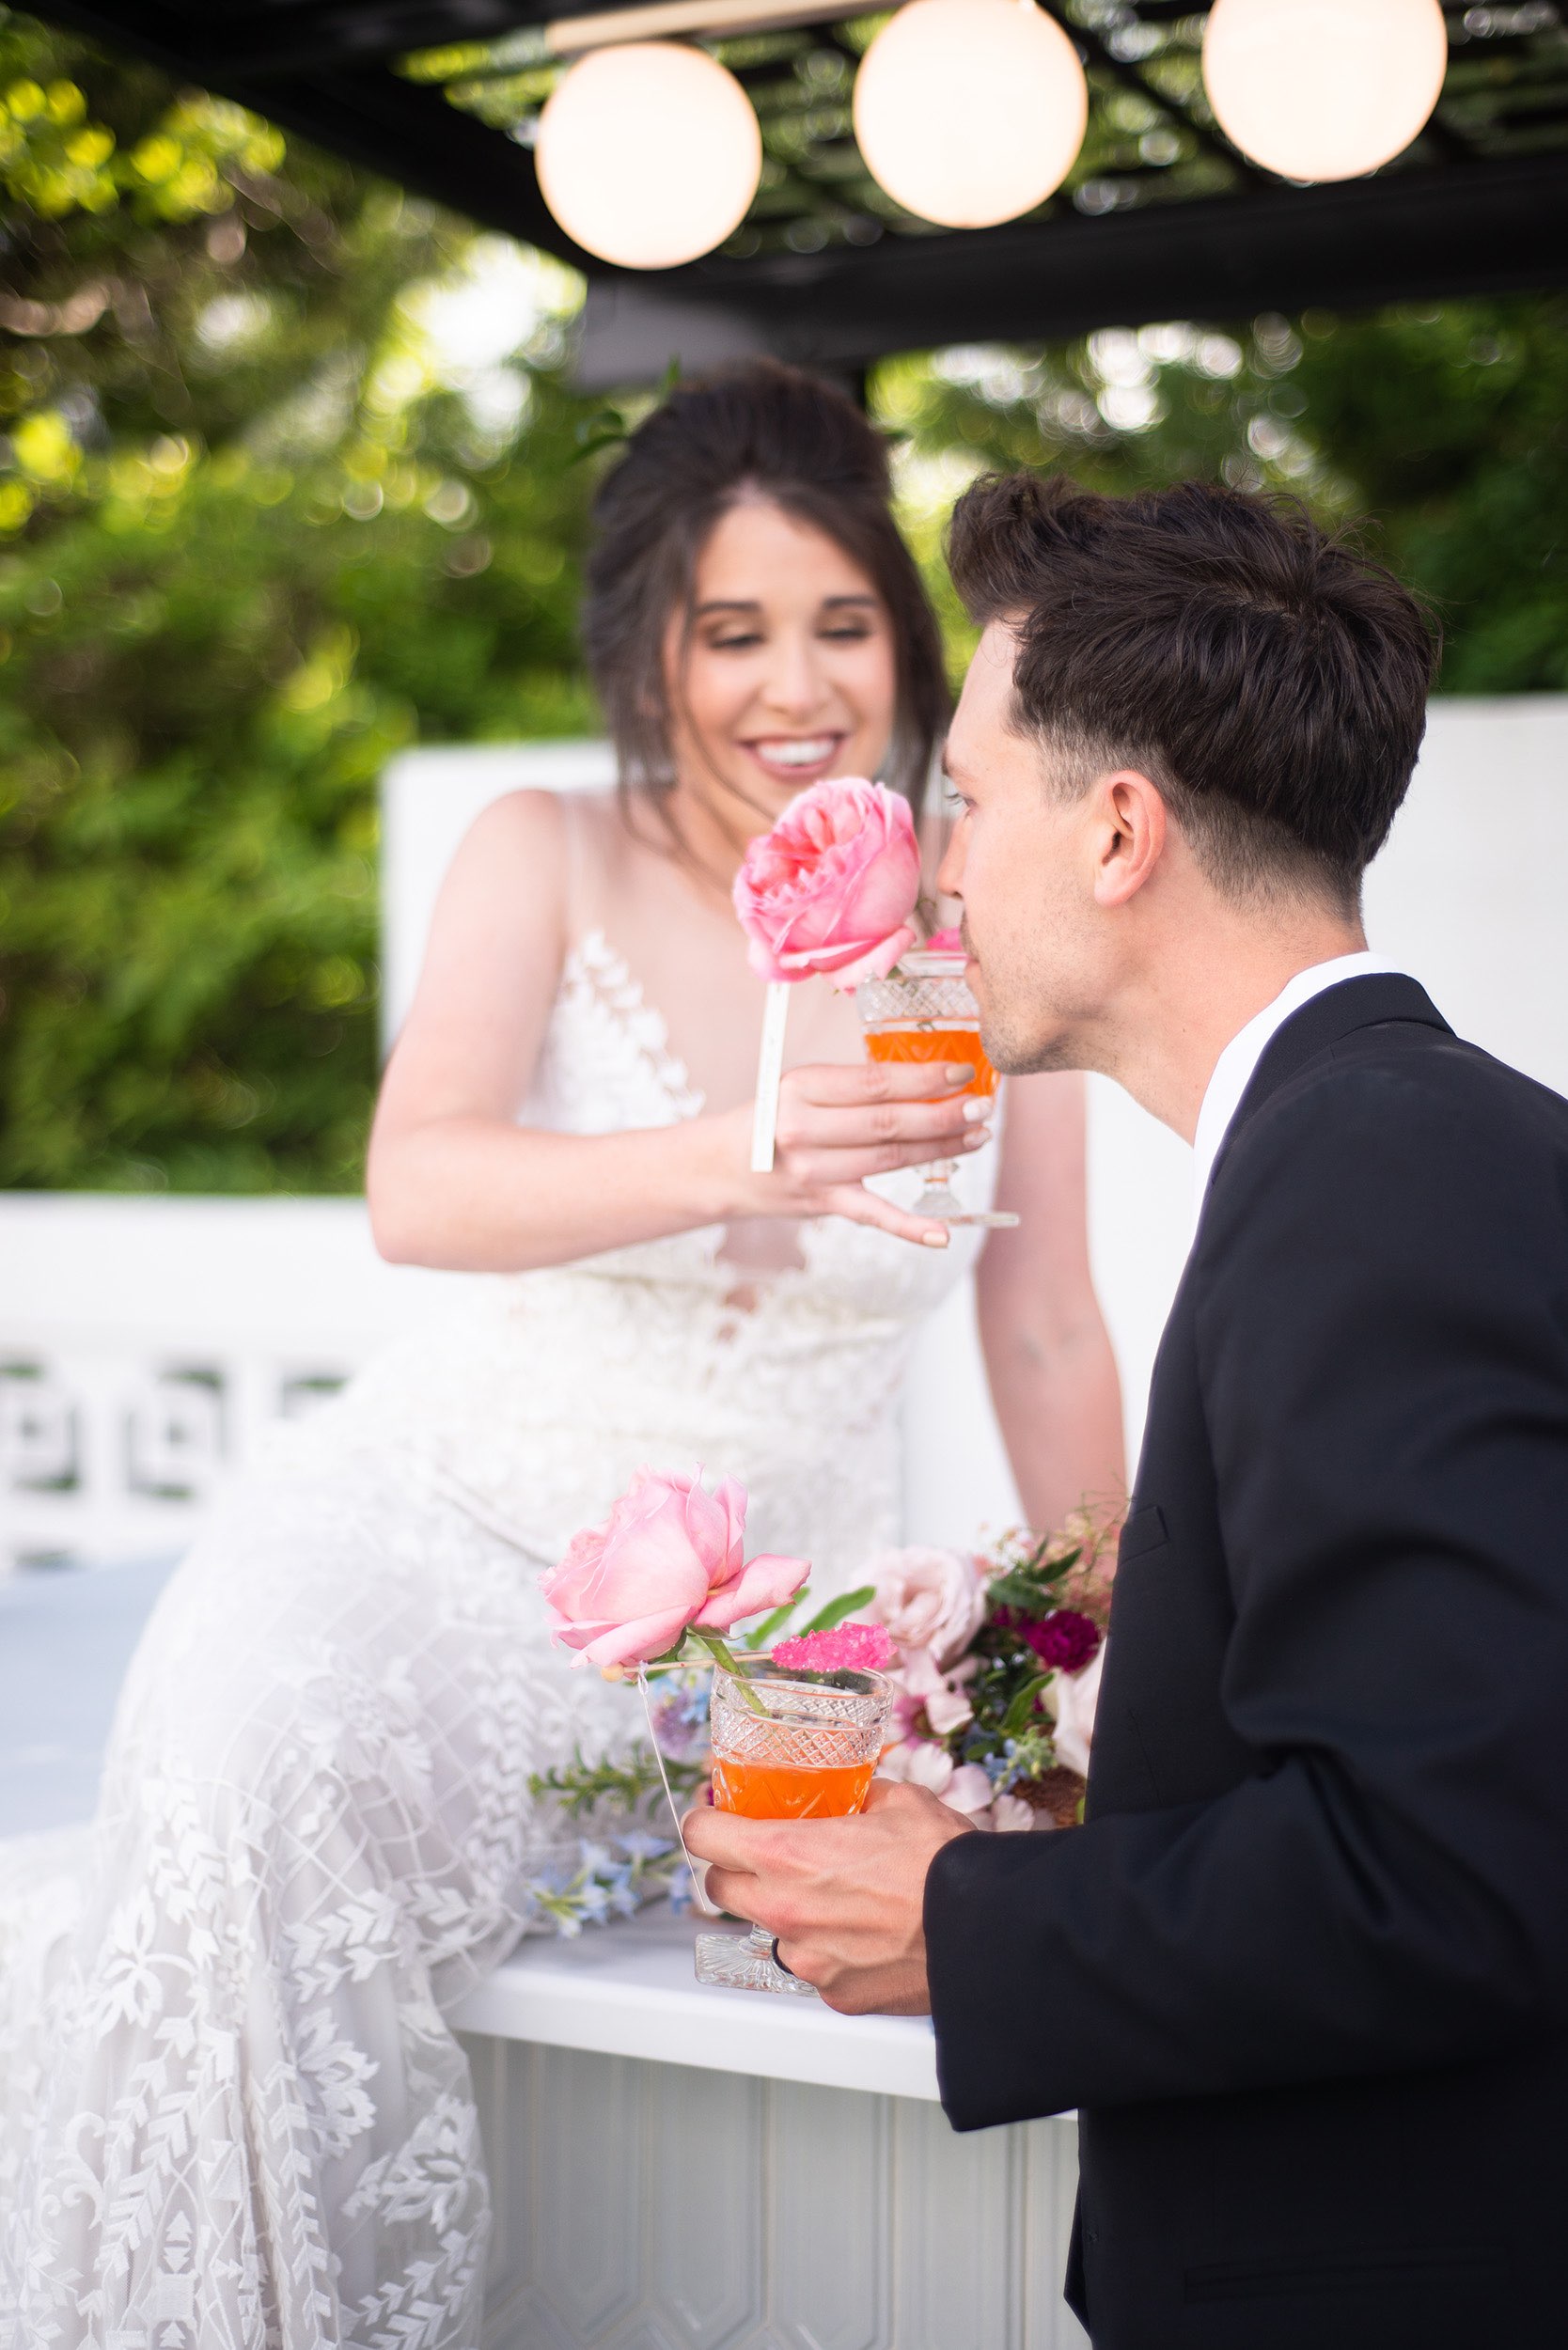 Bride letting groom smell her orange drink.